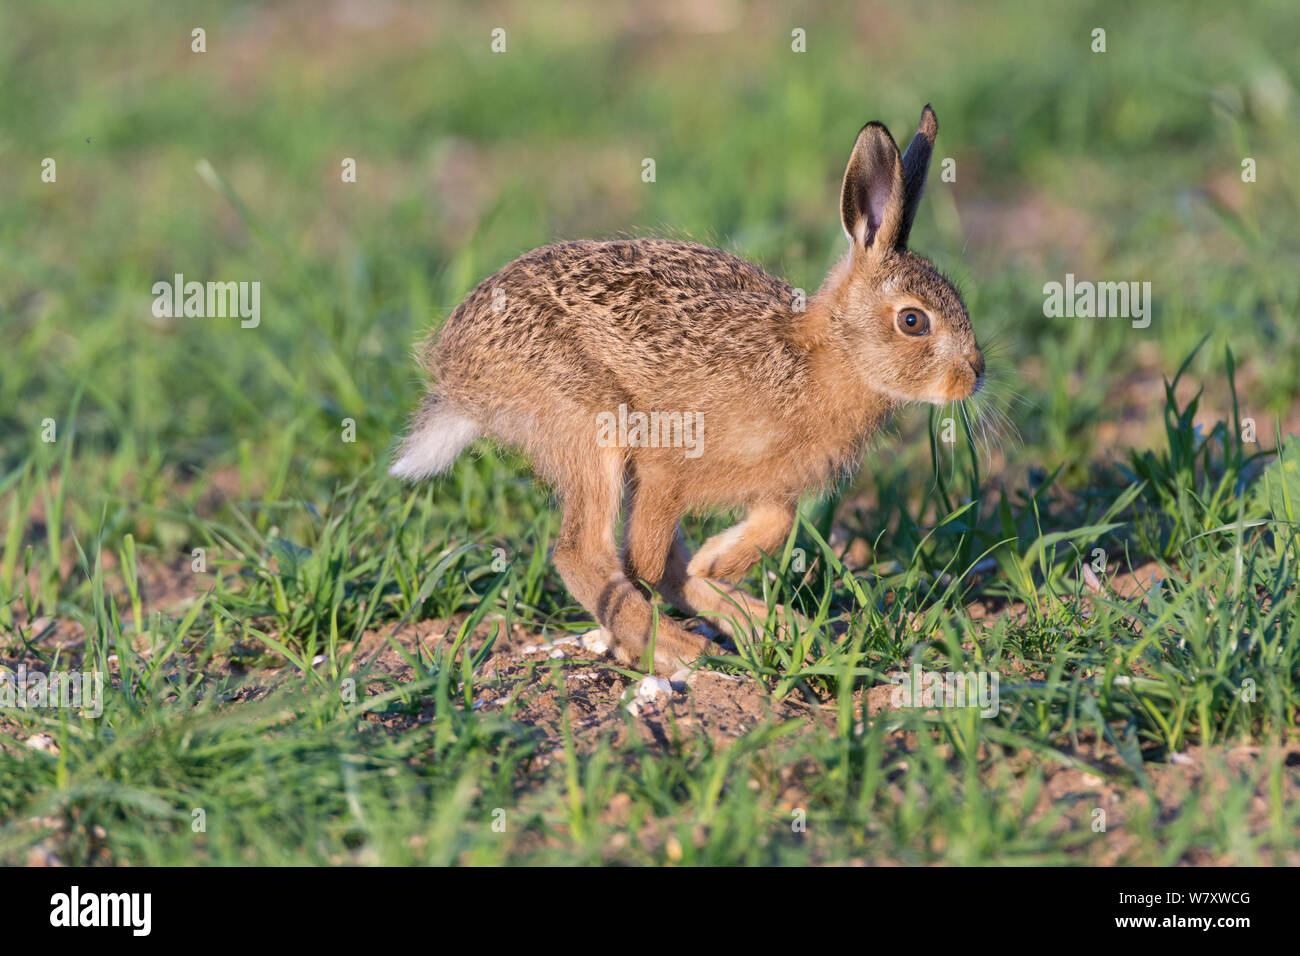 Europäische hare (Lepus europaeus) leveret läuft, England, Juni. Stockfoto